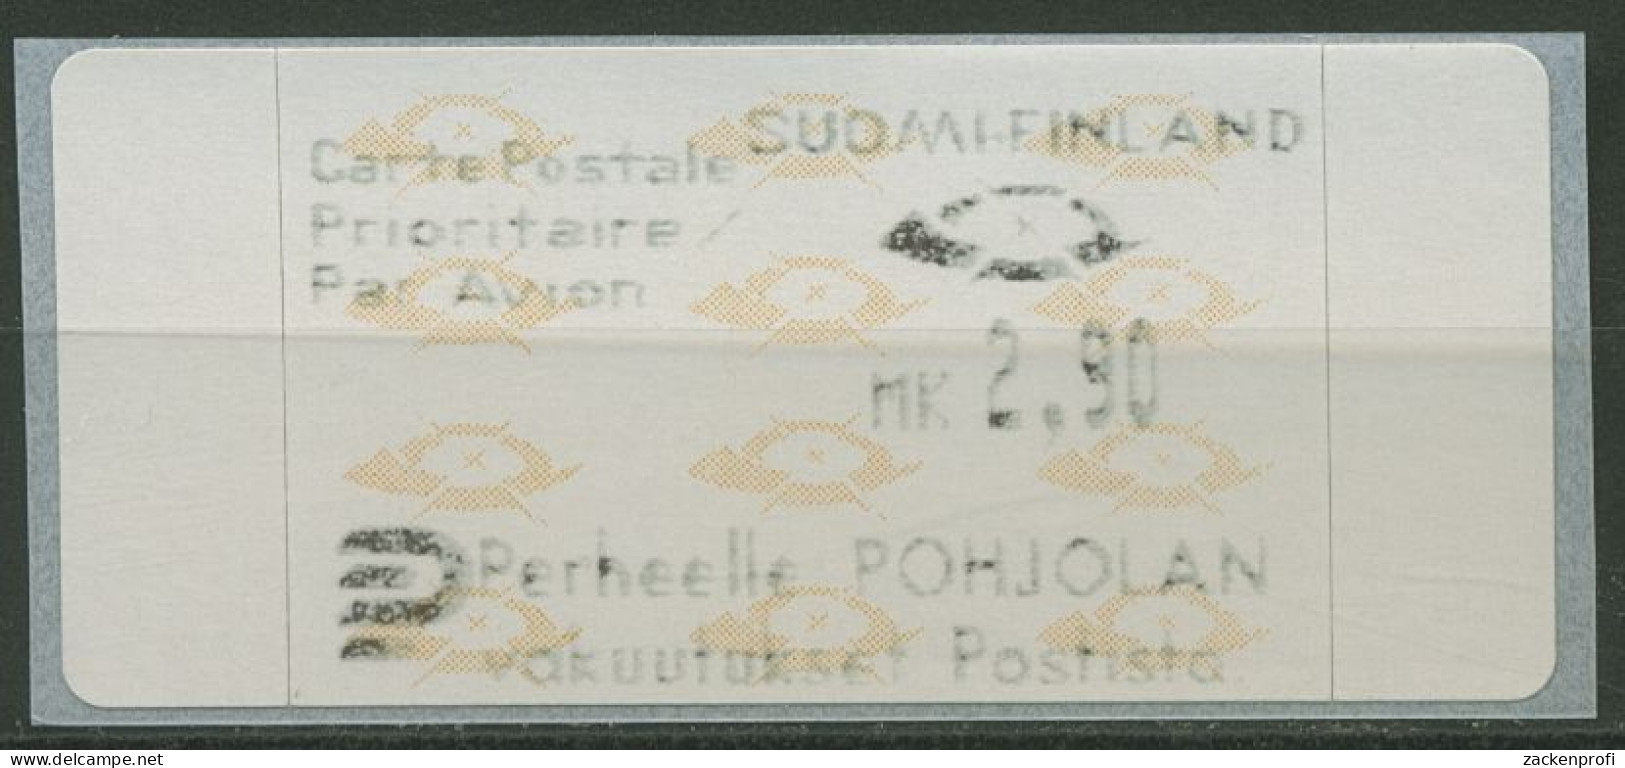 Finnland Automatenmarken 1992 Posthörner Einzelwert ATM 12.3 Z3 Postfrisch - Automatenmarken [ATM]